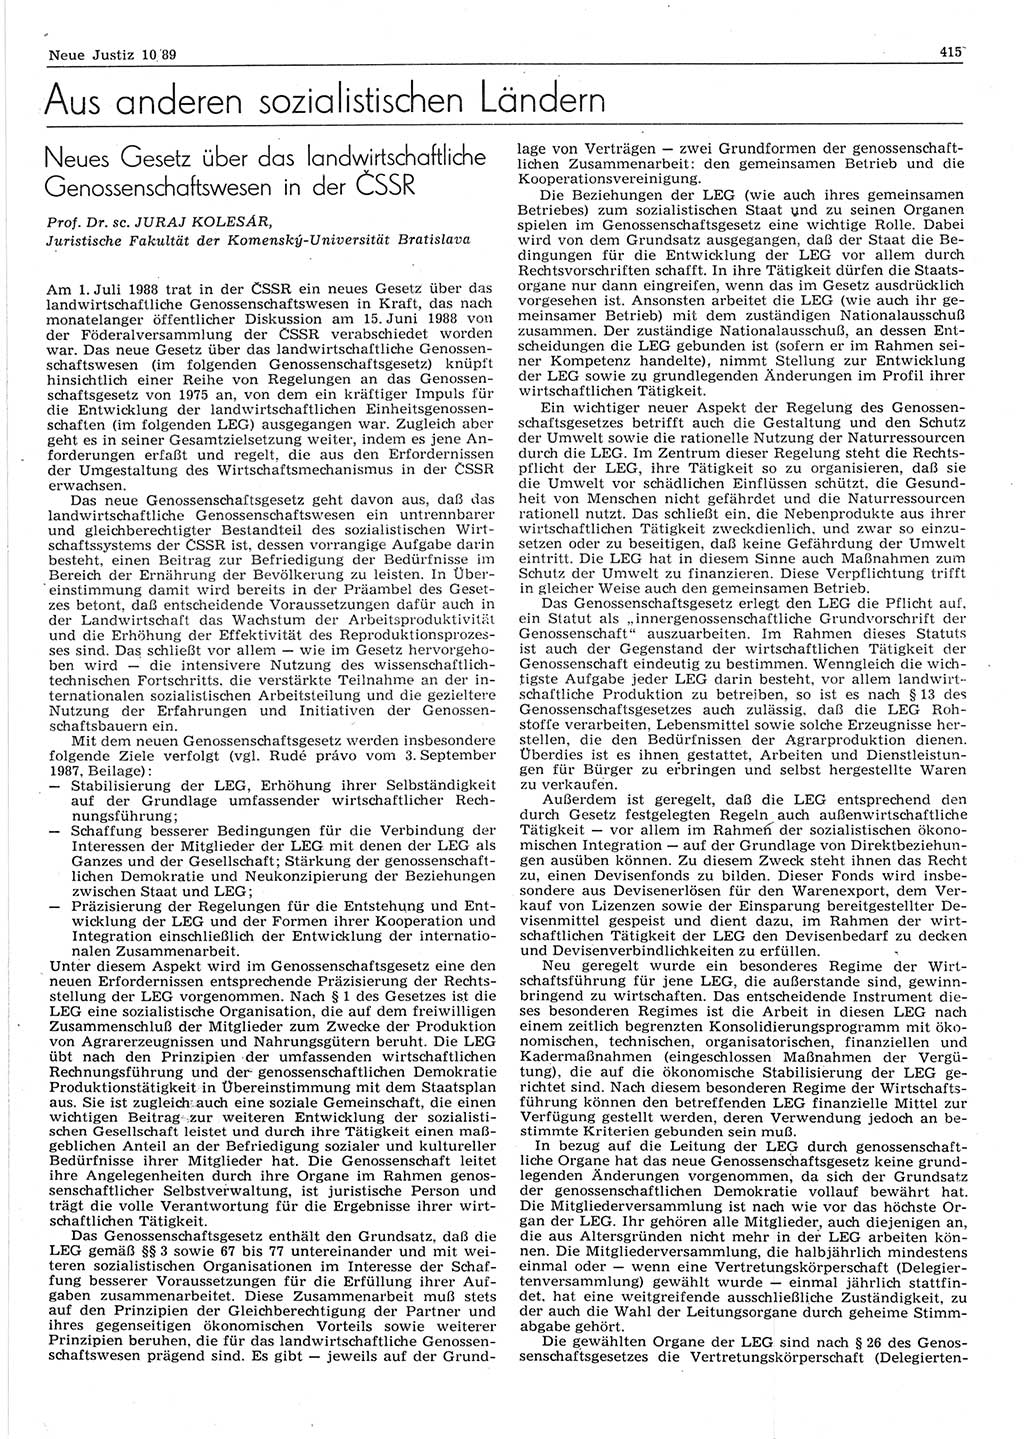 Neue Justiz (NJ), Zeitschrift für sozialistisches Recht und Gesetzlichkeit [Deutsche Demokratische Republik (DDR)], 43. Jahrgang 1989, Seite 415 (NJ DDR 1989, S. 415)